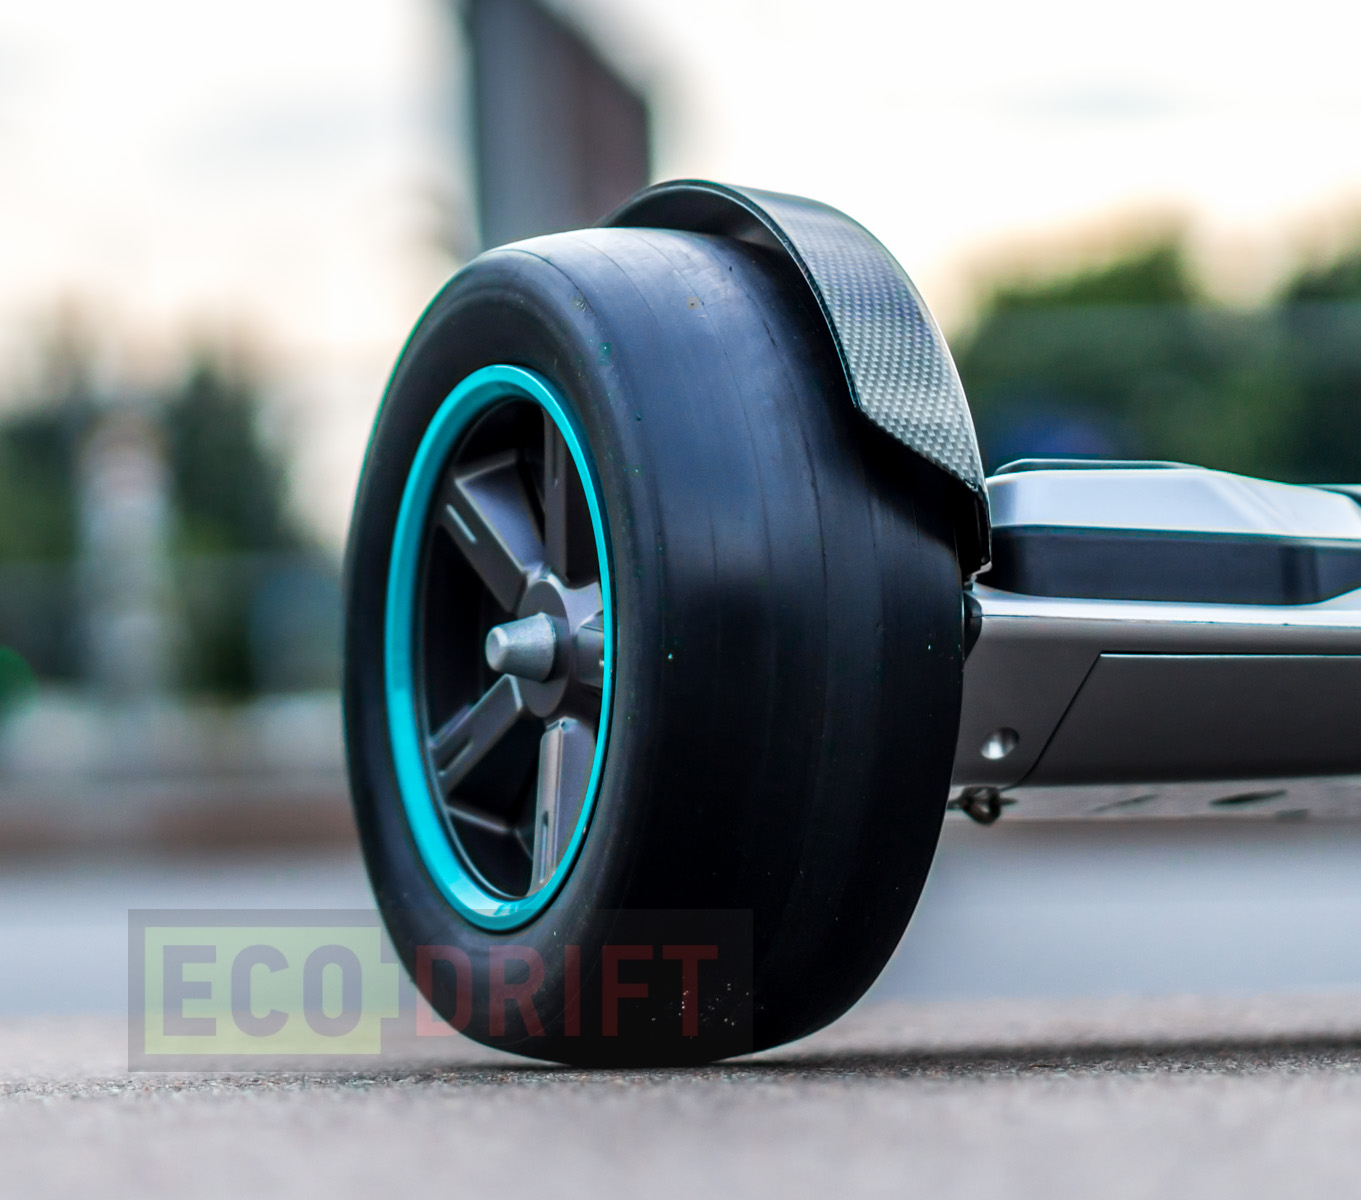 Обзор гироскутера Ecodrift Formula1. Стильный и функциональный